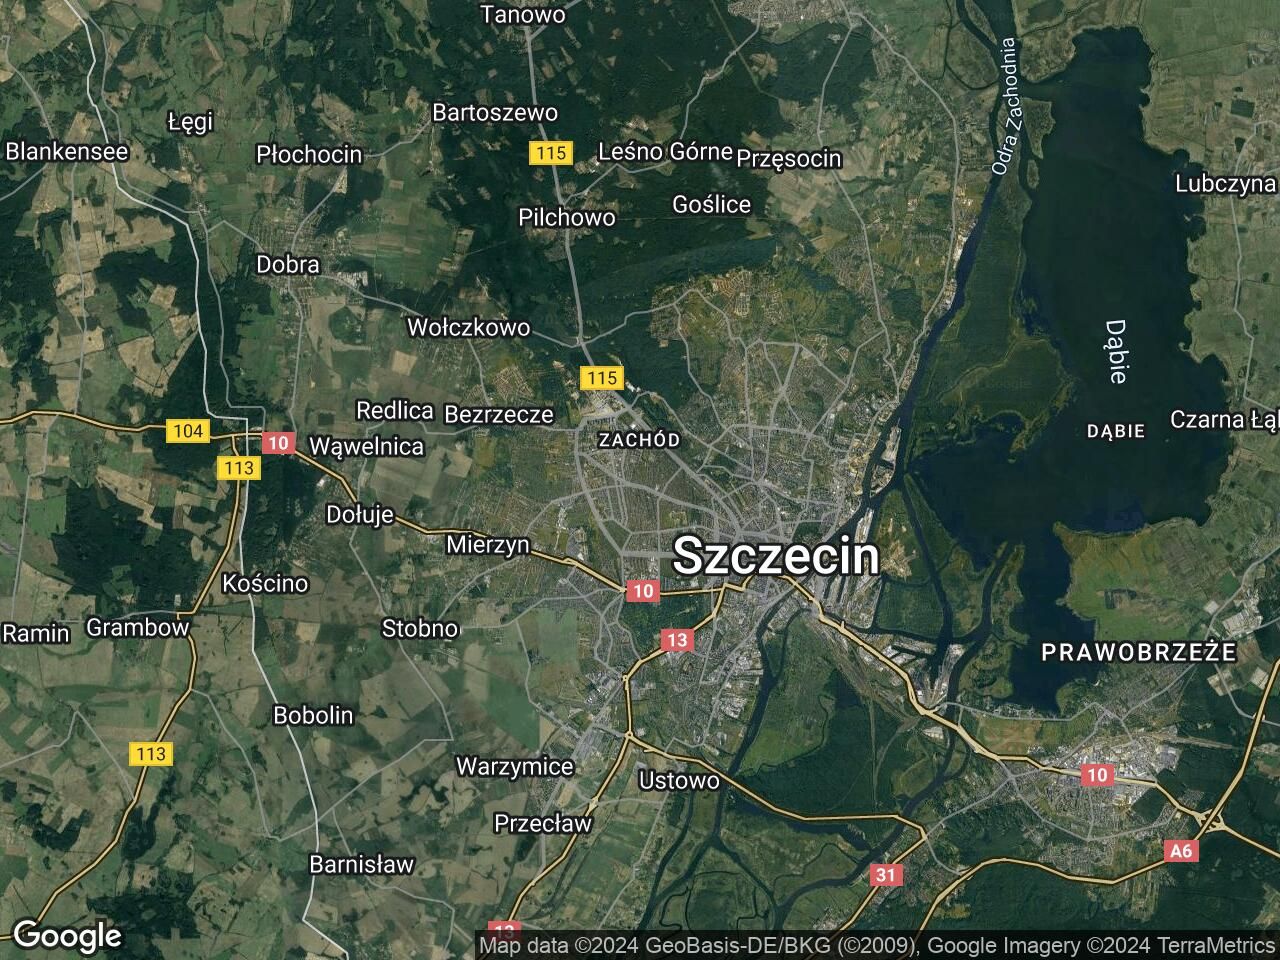 Lokal Szczecin Pogodno